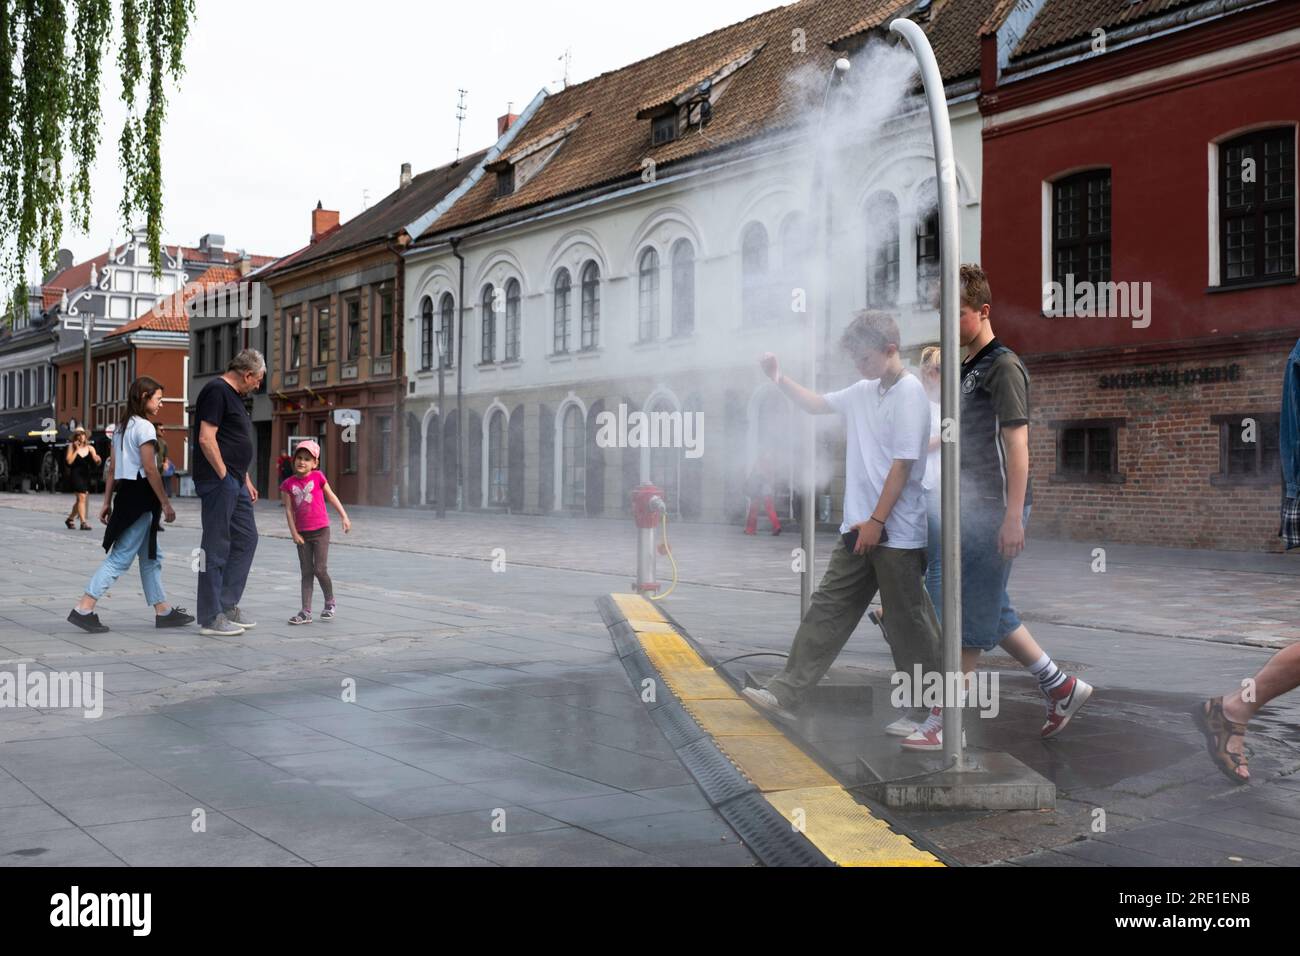 I ragazzi camminano attraverso un arco metallico di un irrigatore ad acqua per rinfrescarsi a causa dell'appannamento, in una piazza a Kaunas. Pericolo di contaminazione da Legionella Foto Stock